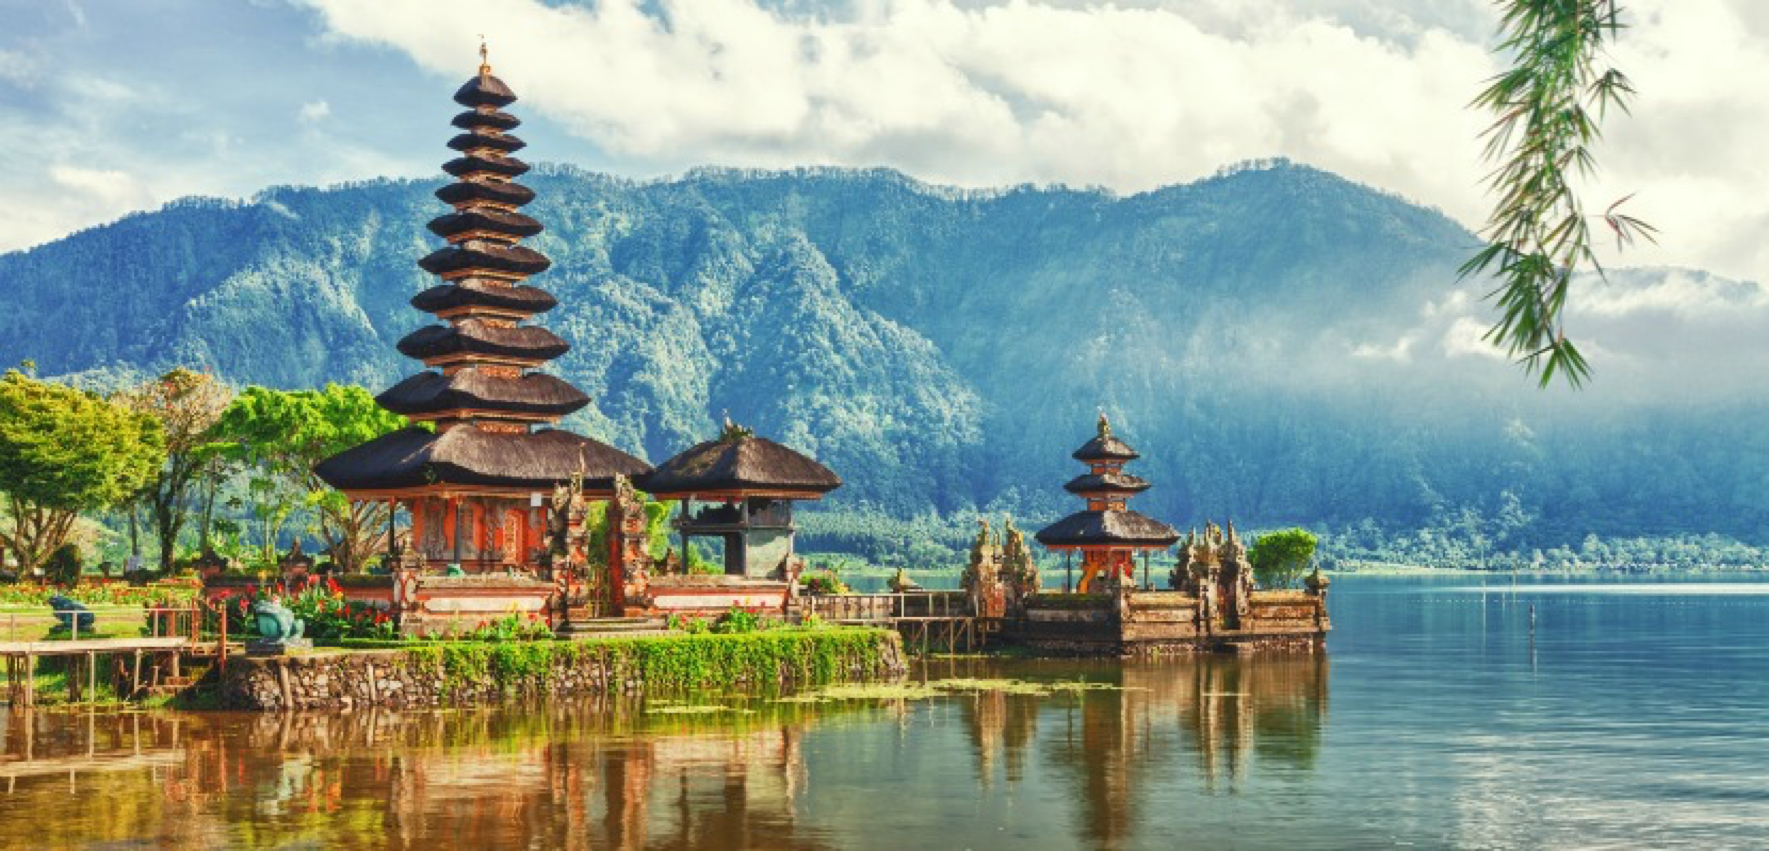 De viaje a Bali. ¿Dónde comer?